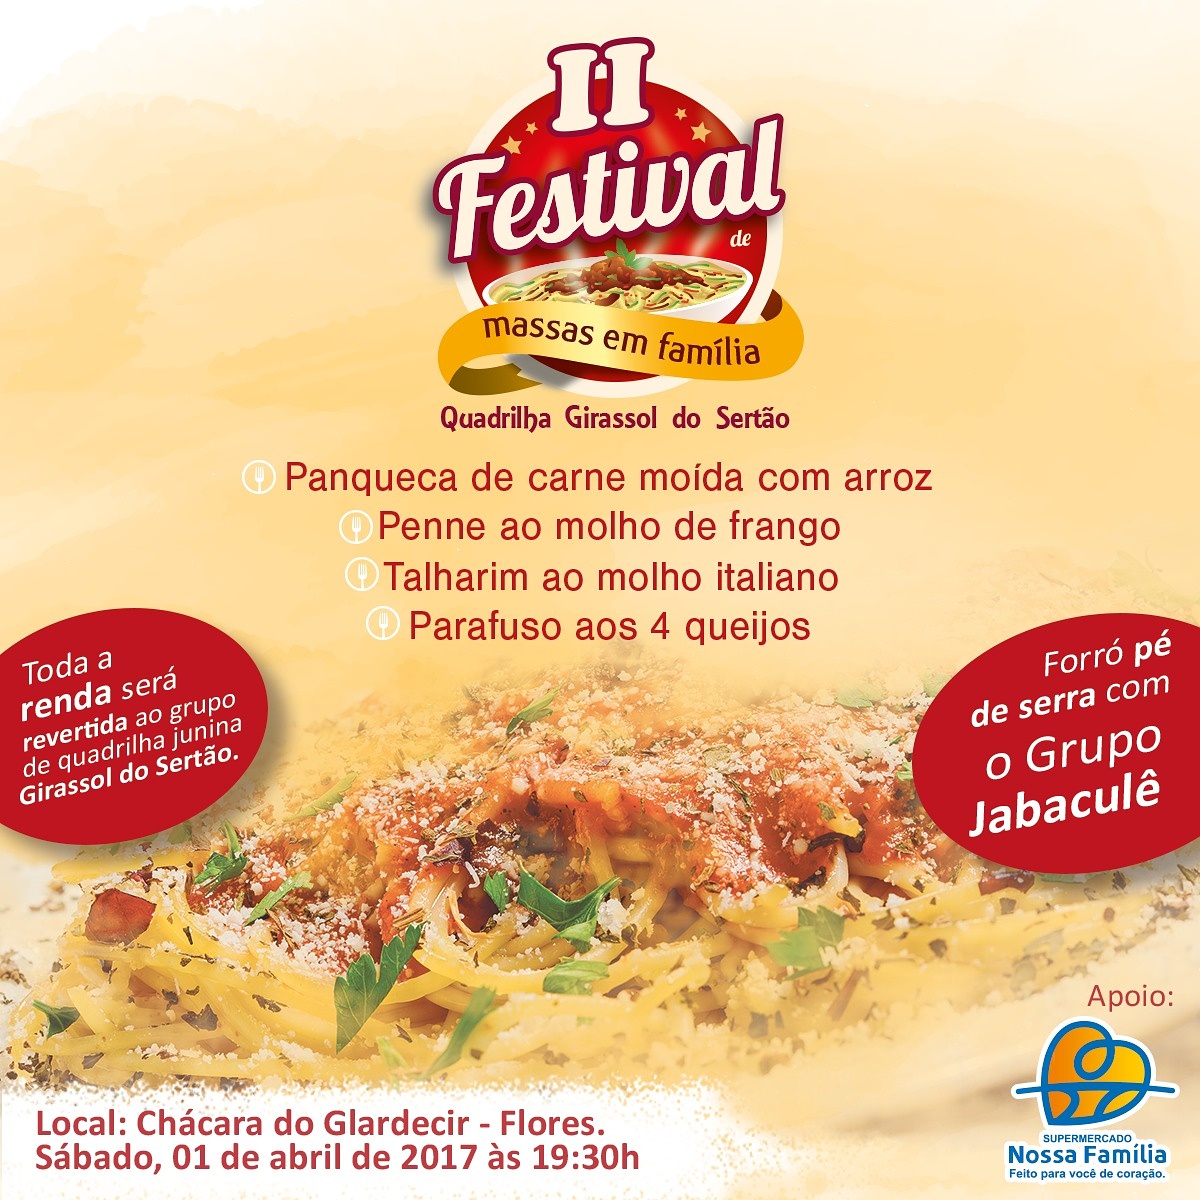 Vem aí o II Festival de Massas em Família da Quadrilha Girassol do Sertão.